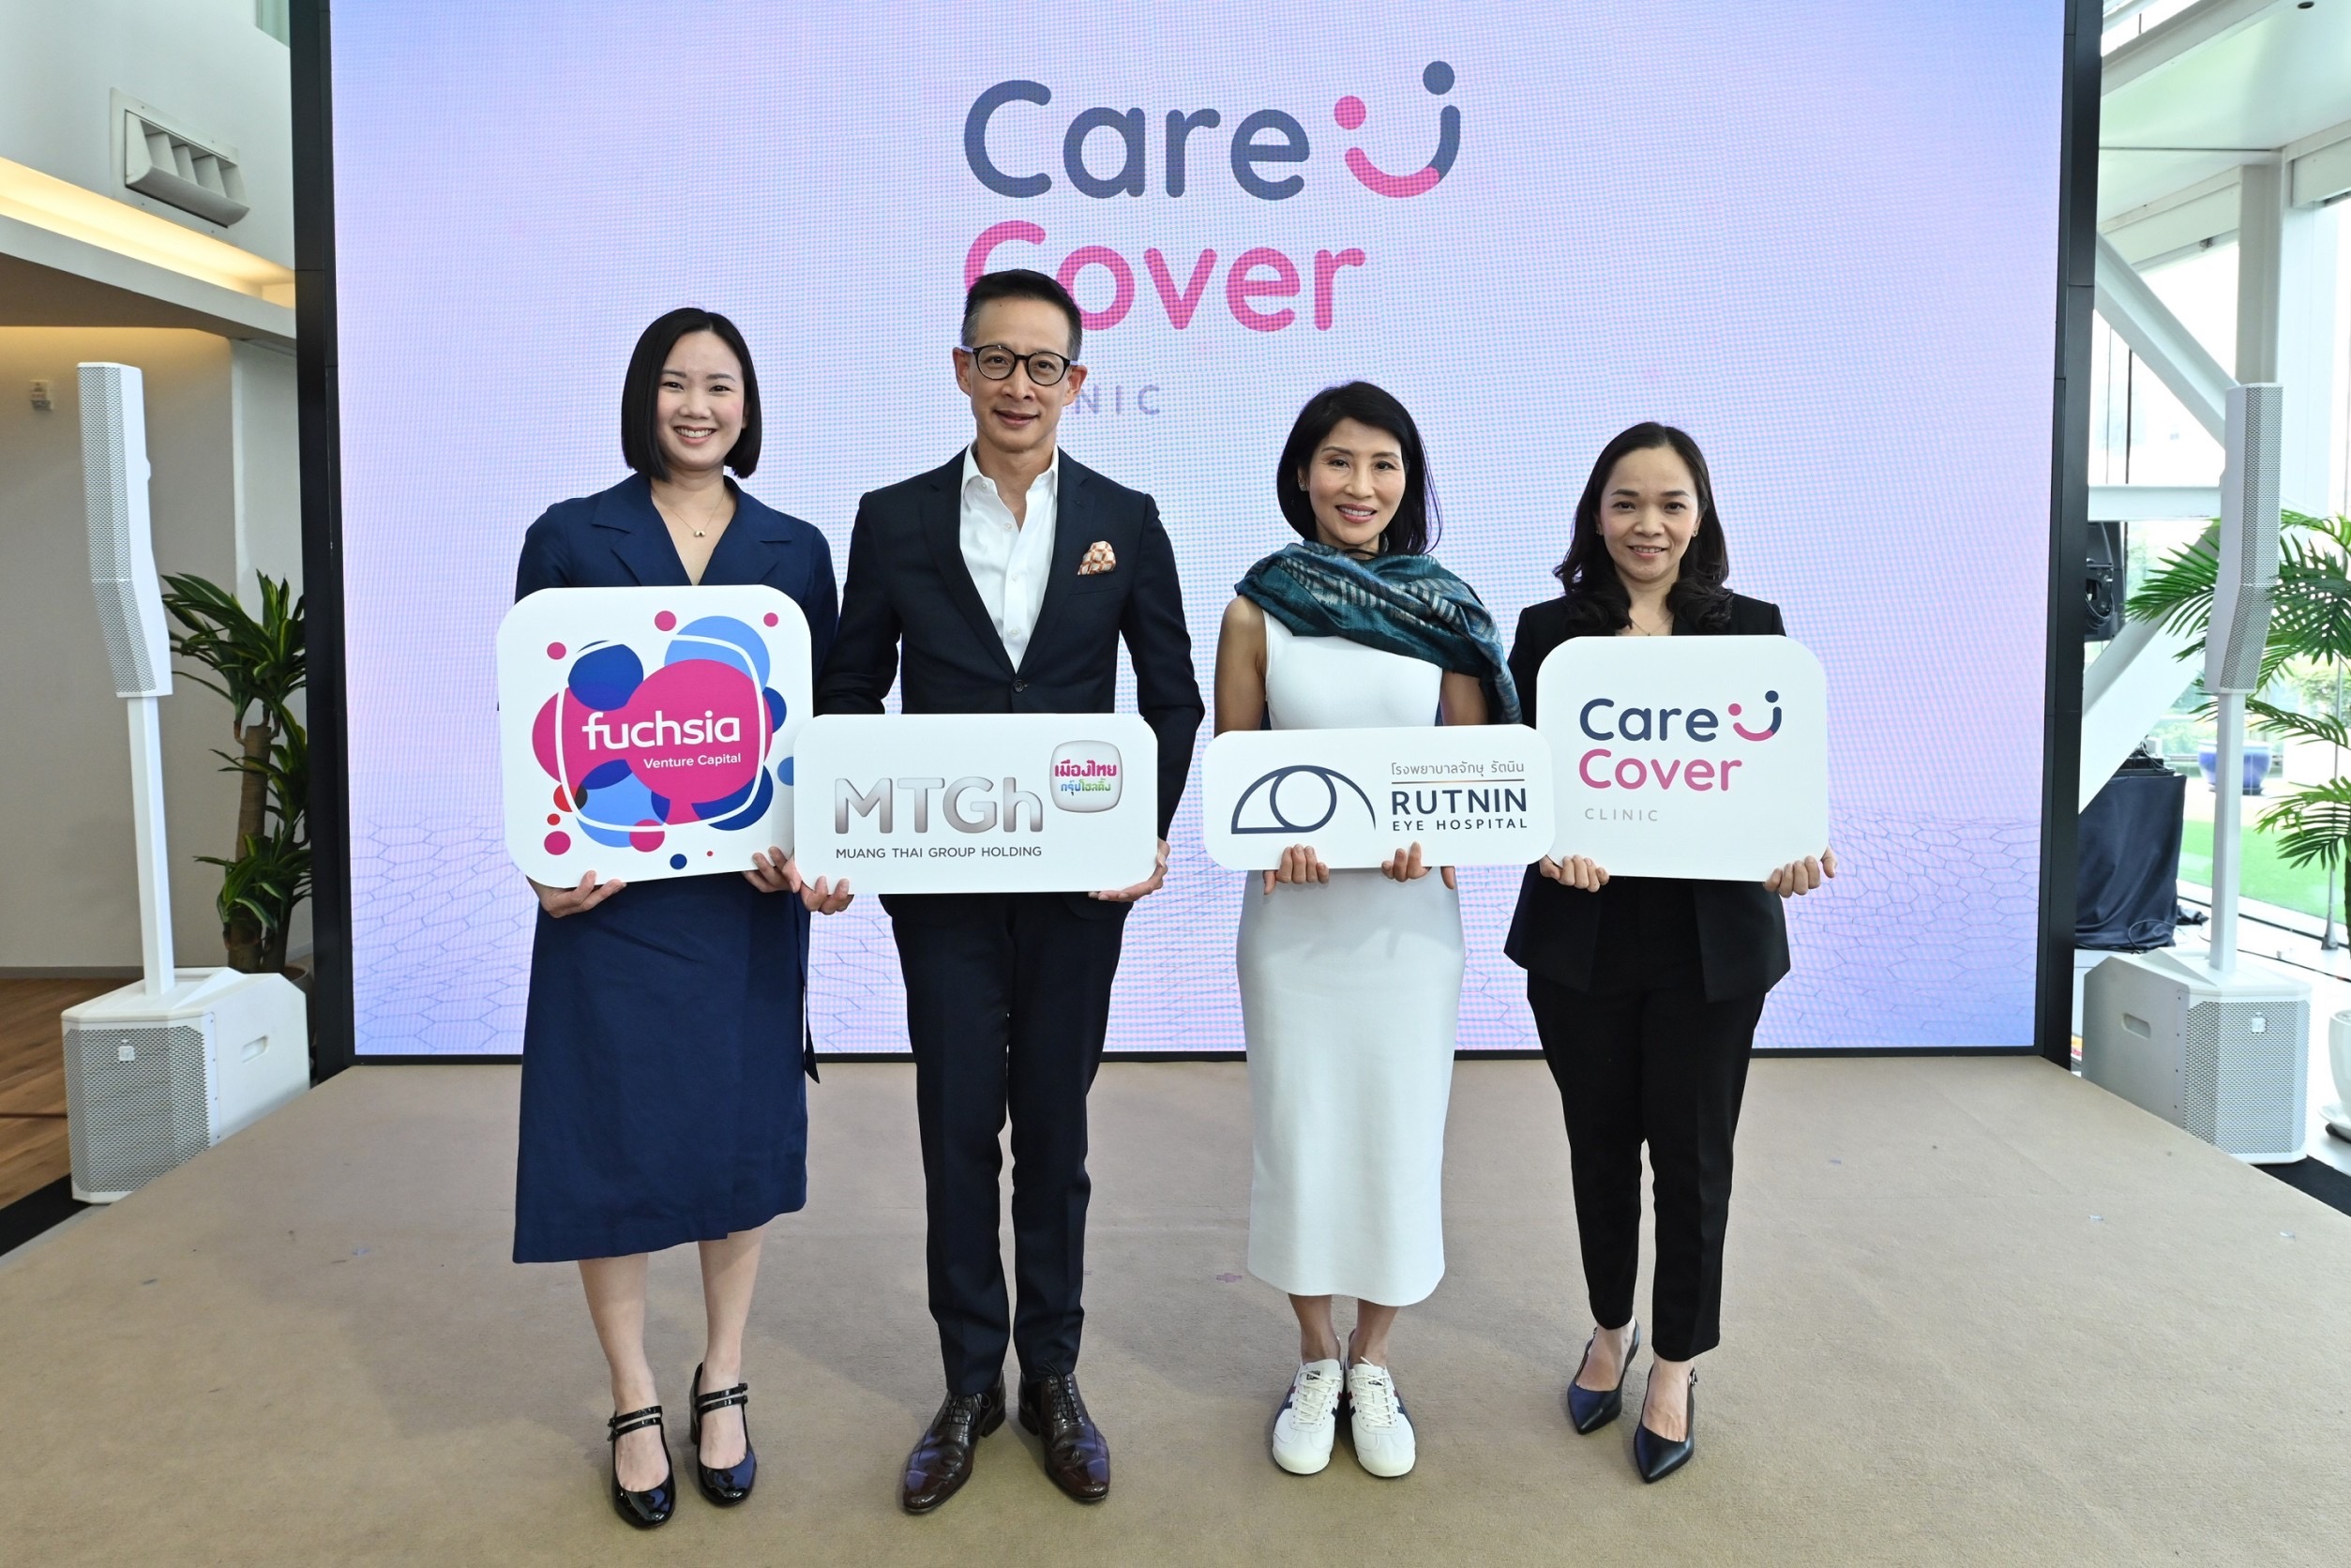 ผนึกกำลังครั้งสำคัญ!  เปิดตัว “แคร์คัฟเวอร์ สหคลินิก” ด้วยความร่วมมือกันระหว่าง Fuchsia Venture Capital และ โรงพยาบาลจักษุ รัตนิน ทางเลือกใหม่สำหรับการรักษาระดับปฐมภูมิ (Primary Care) ในประเทศไทย